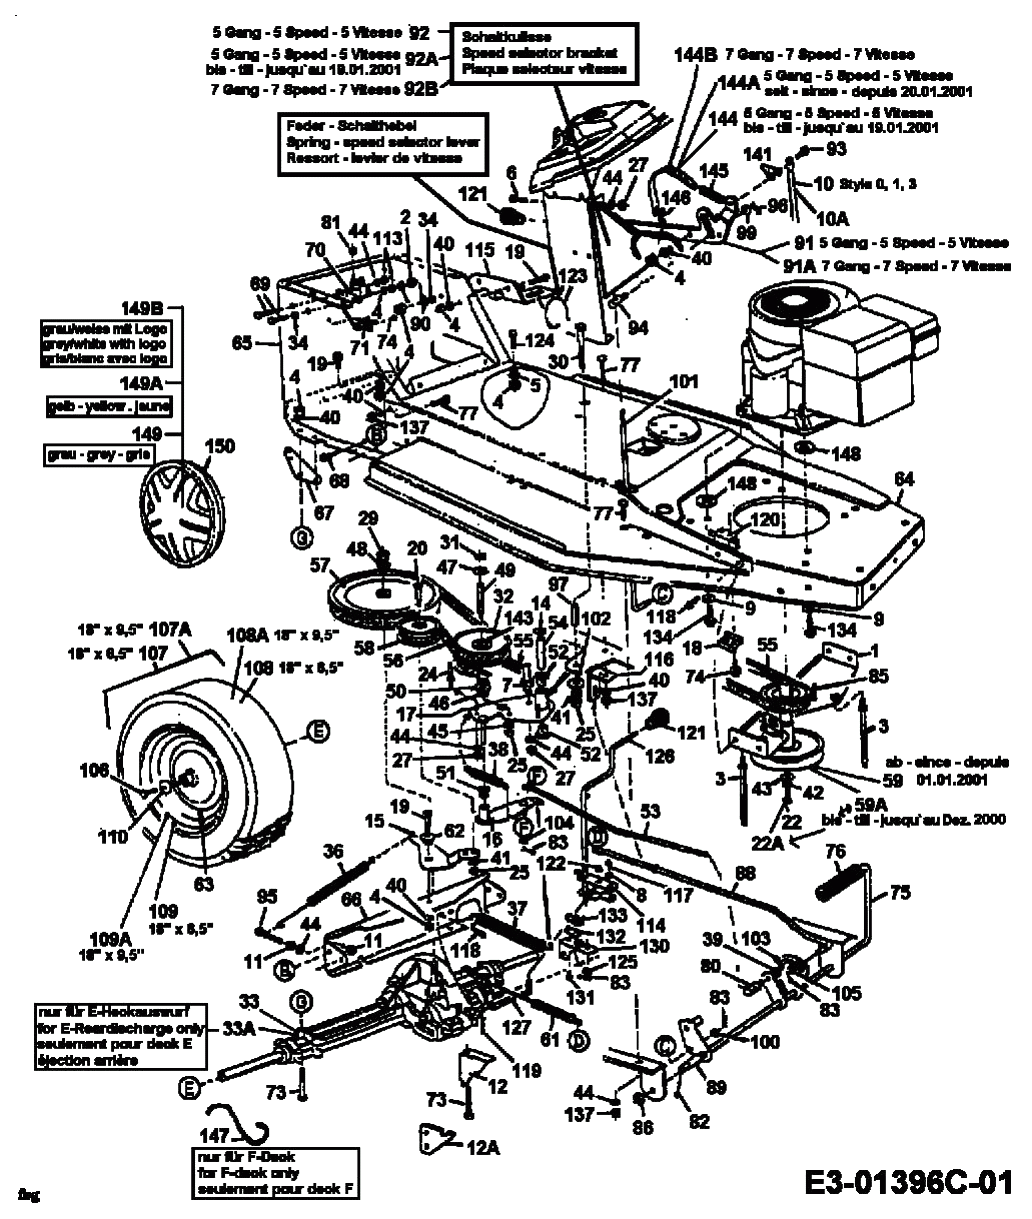 MTD Артикул 13C1452C600 (год выпуска 2003). Система привода, шкив двигателя, педали, задние колеса